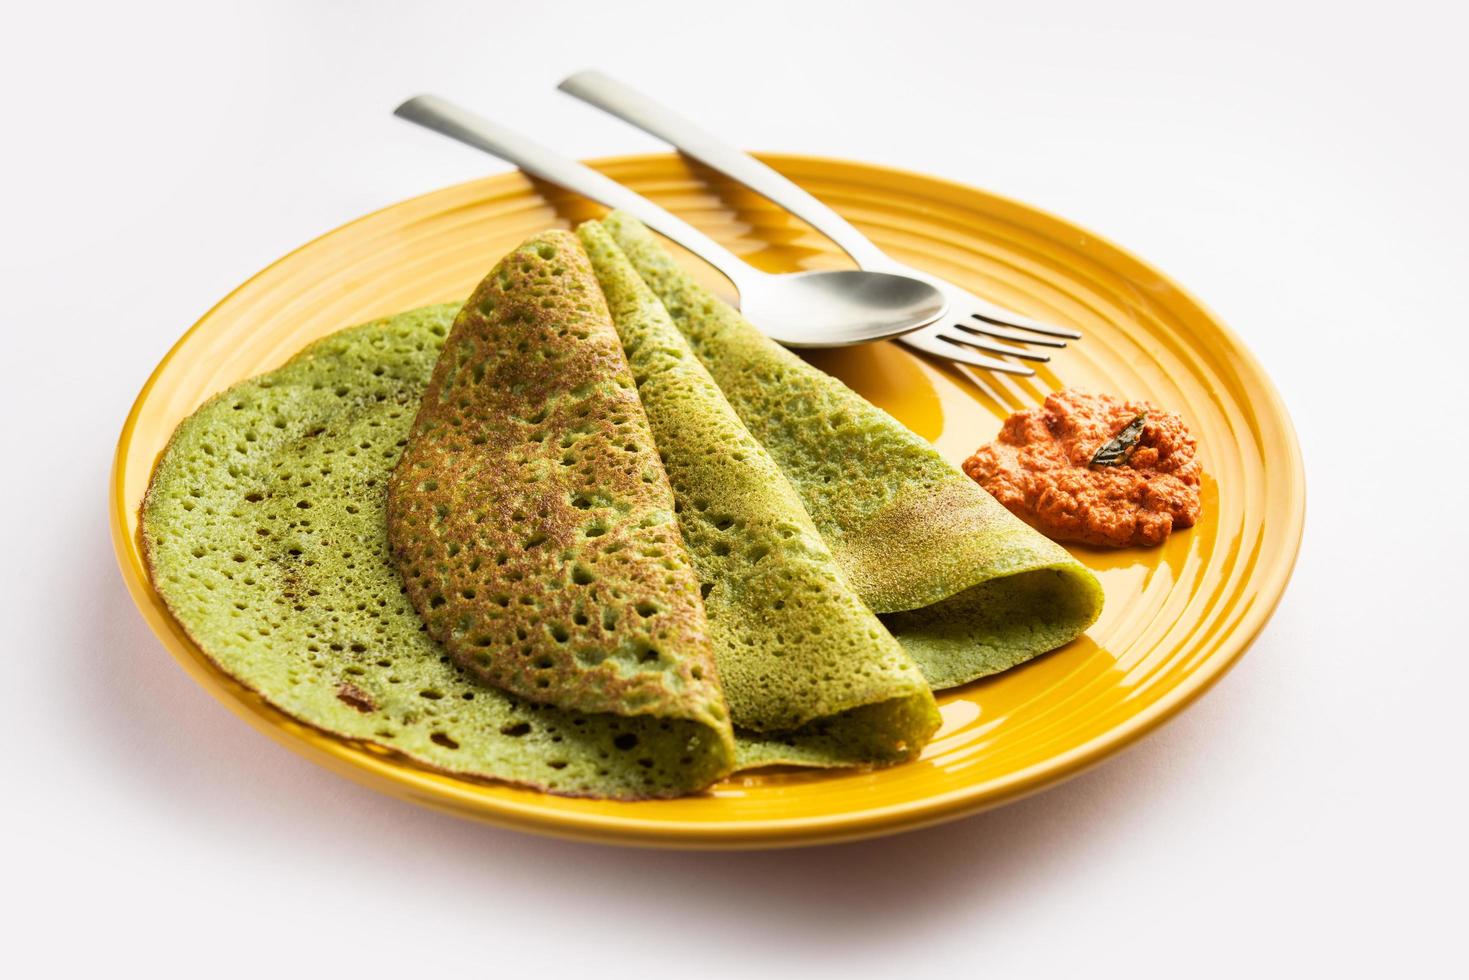 palak dosa fait en mélangeant des épinards ou du keerai dans une pâte, servi avec du chutney rouge photo